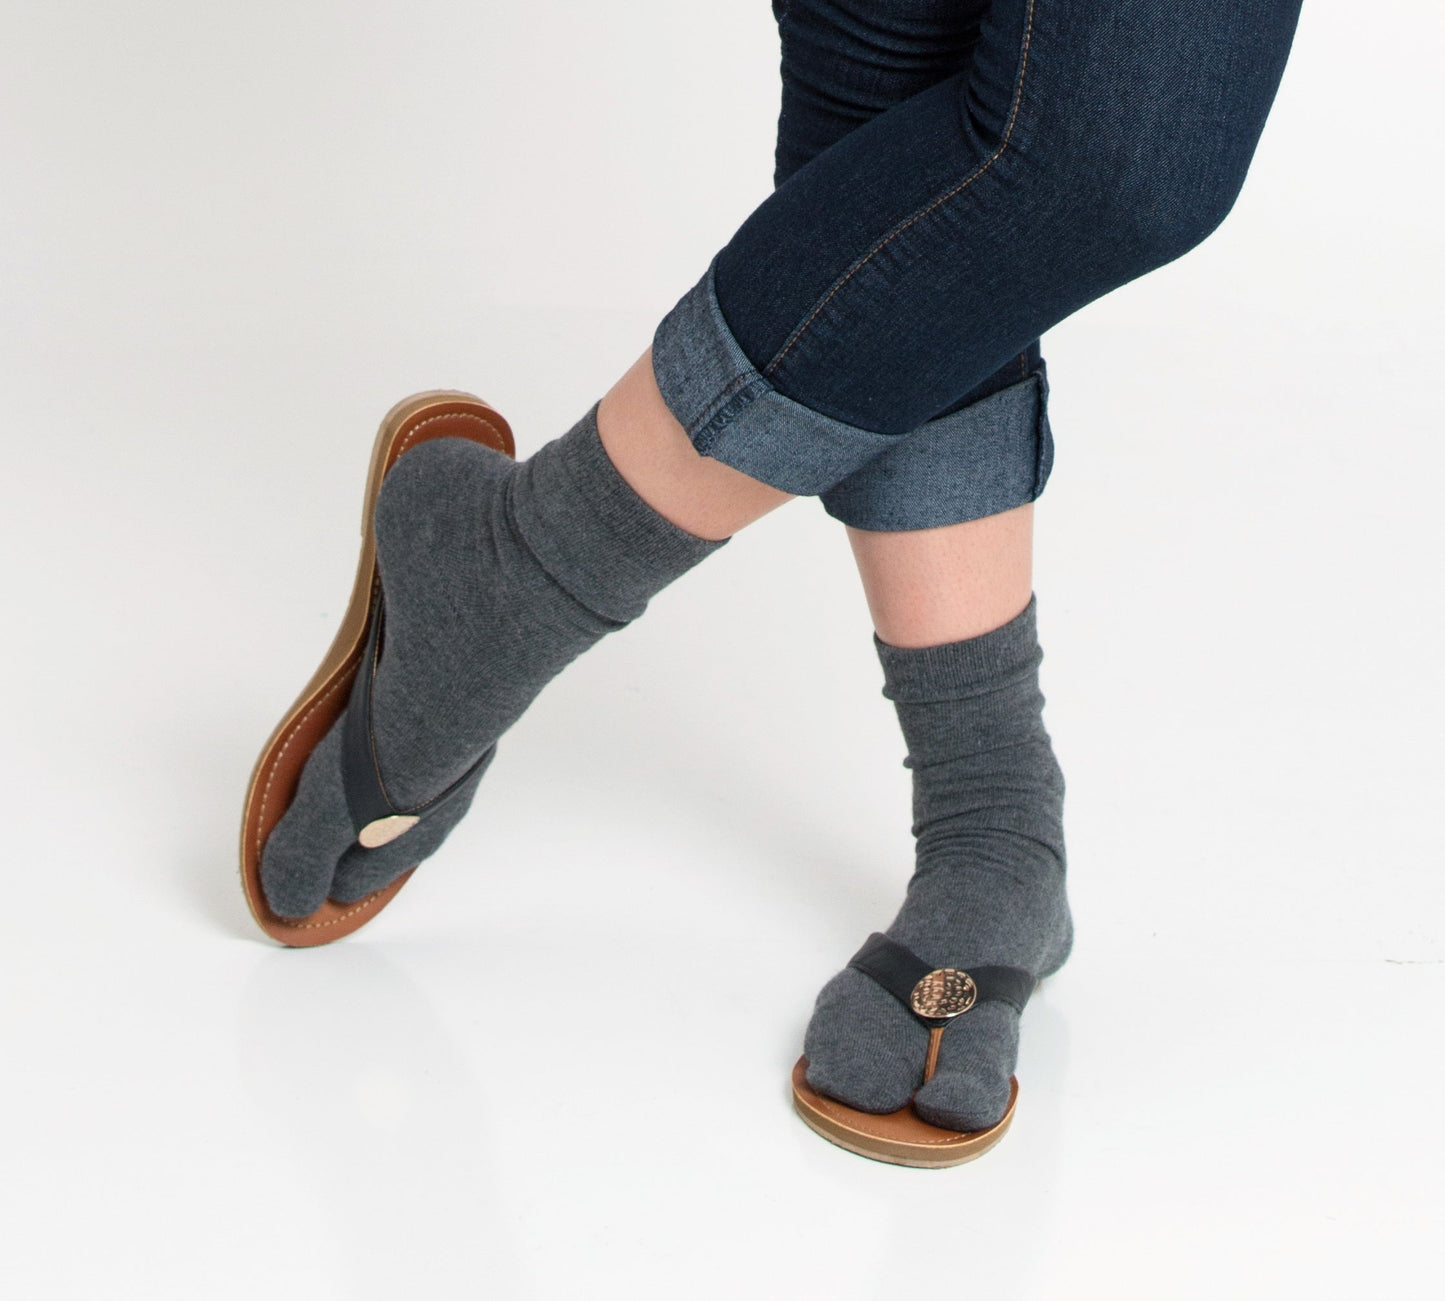 B0CVL4D86L - 3 Pairs V-Toe Socks Black, Khaki and Grey